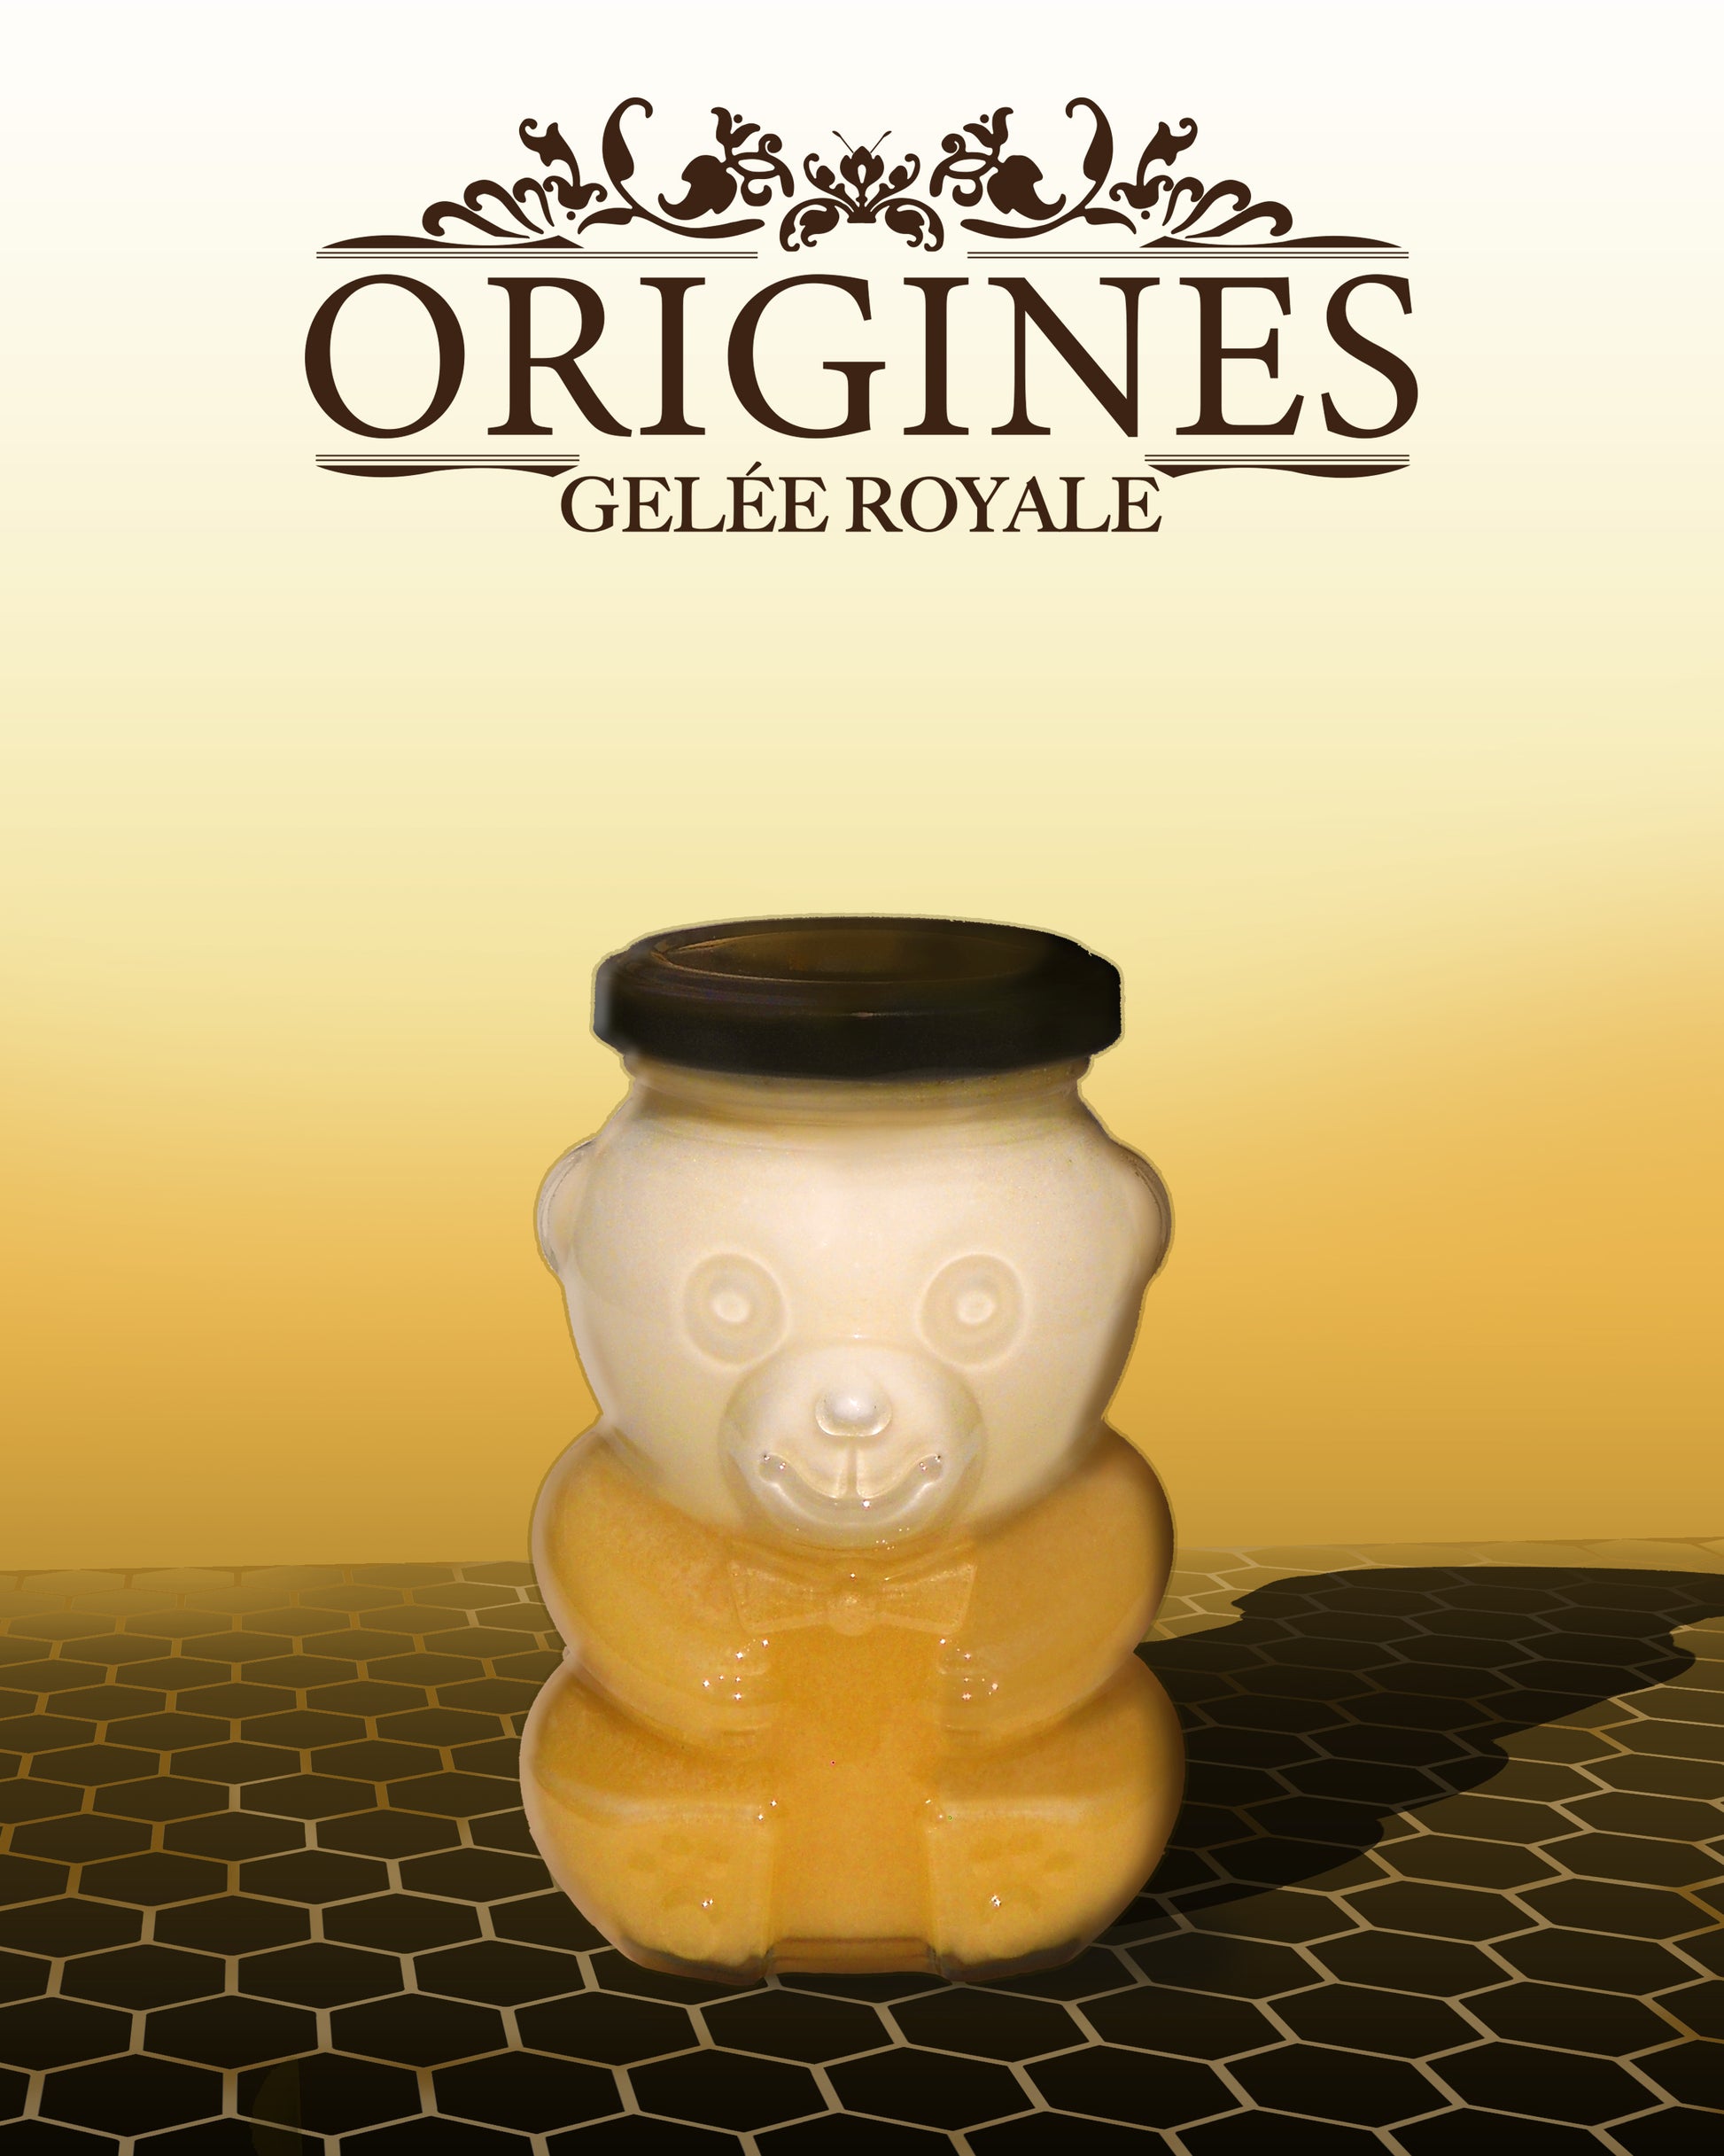 Une photo de notre pot de miel en forme d'ours de 330 g, renfermant de la gelée royale, un trésor de la ruche réputé pour ses bienfaits nutritionnels et sa délicatesse.